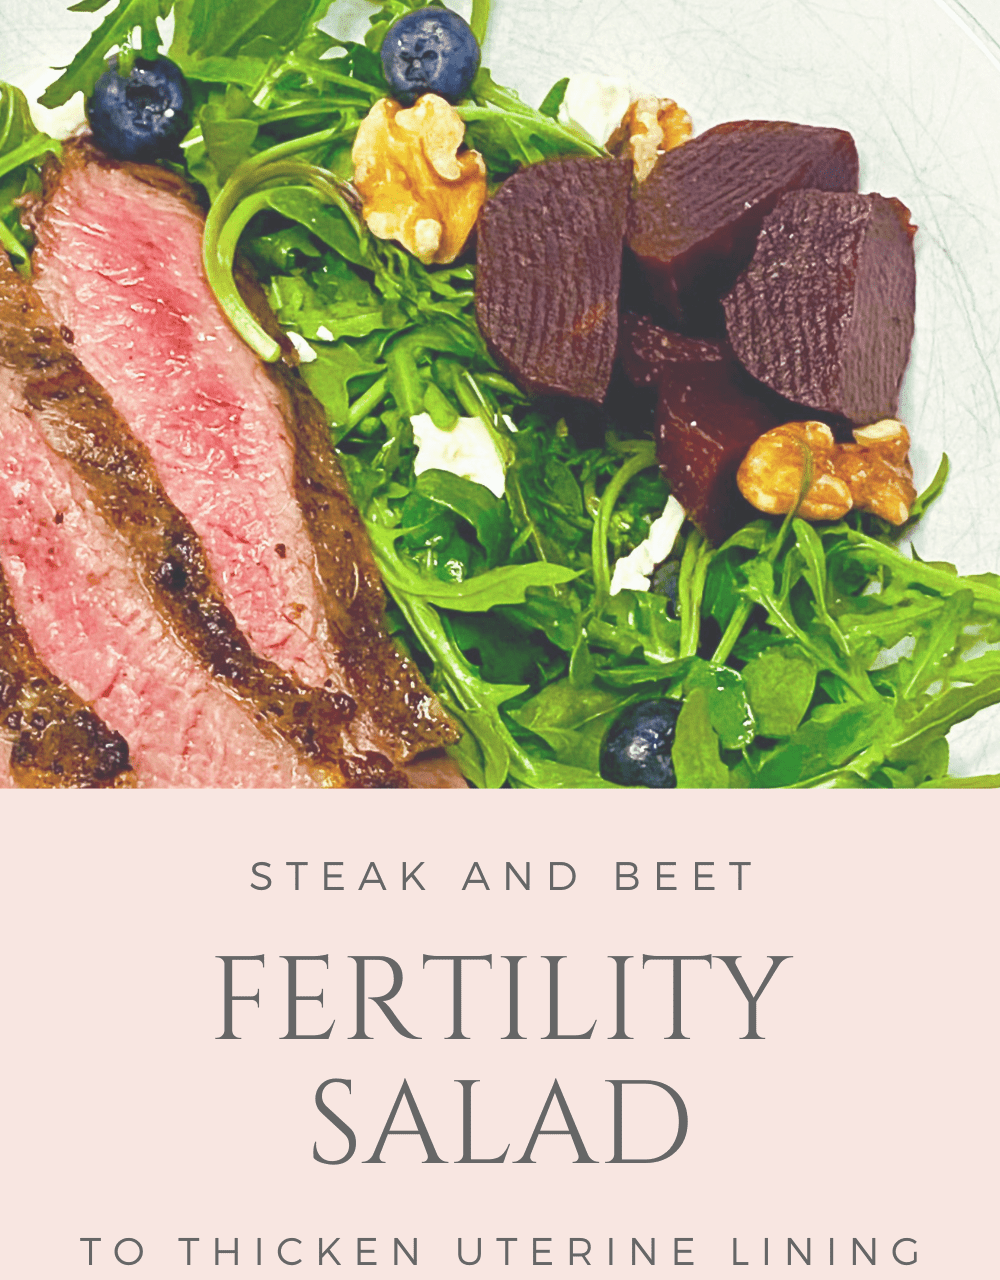 Superfood Steak Salad Fertility Recipe to Thicken Uterine Lining